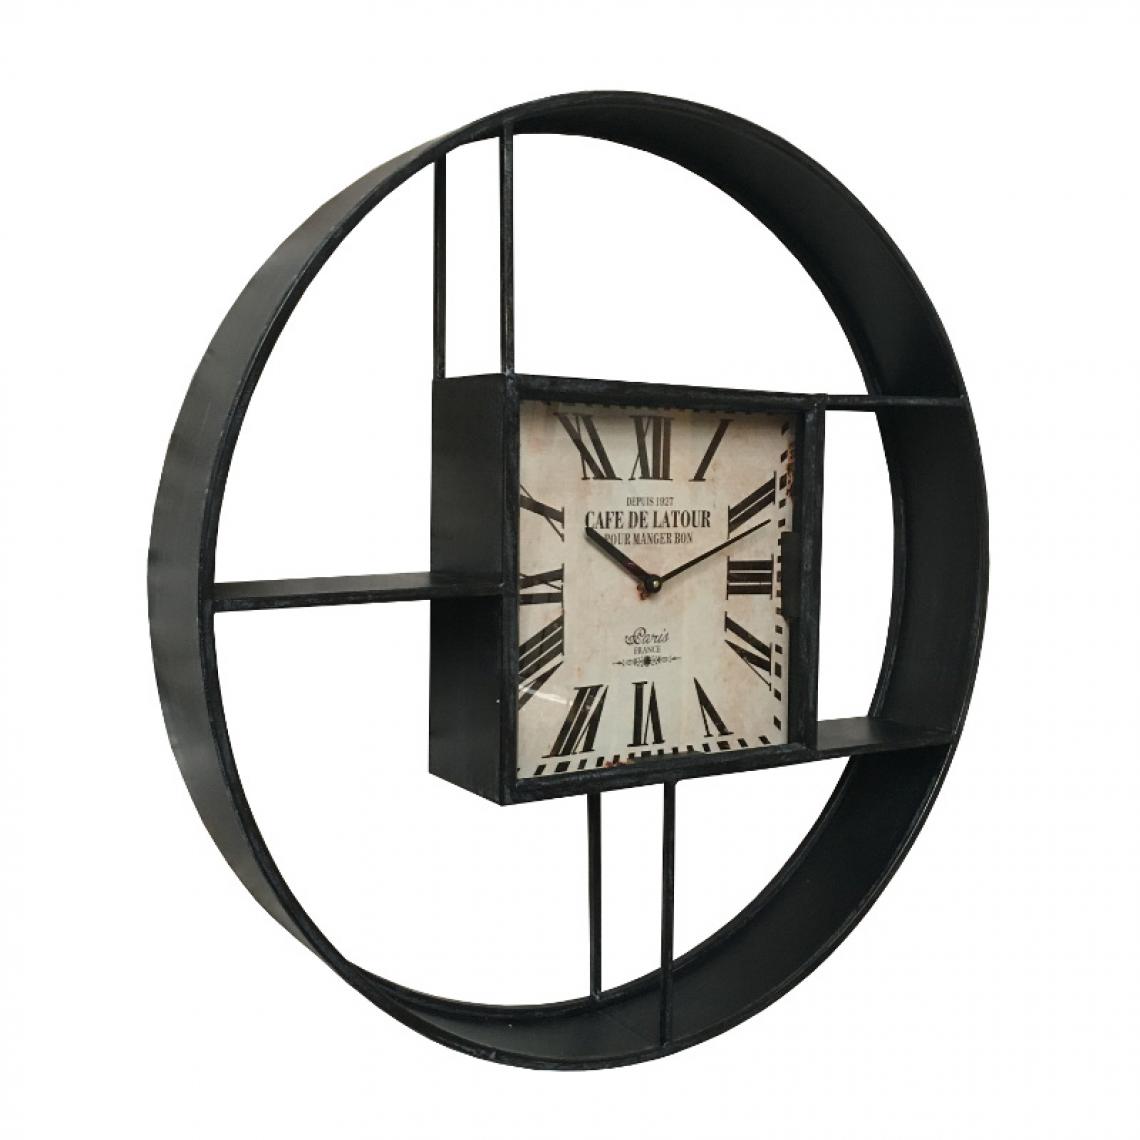 L'Originale Deco - Grande Etagère Horloge Industrielle Métal Fer Murale ø79 cm x 12 cm - Etagères